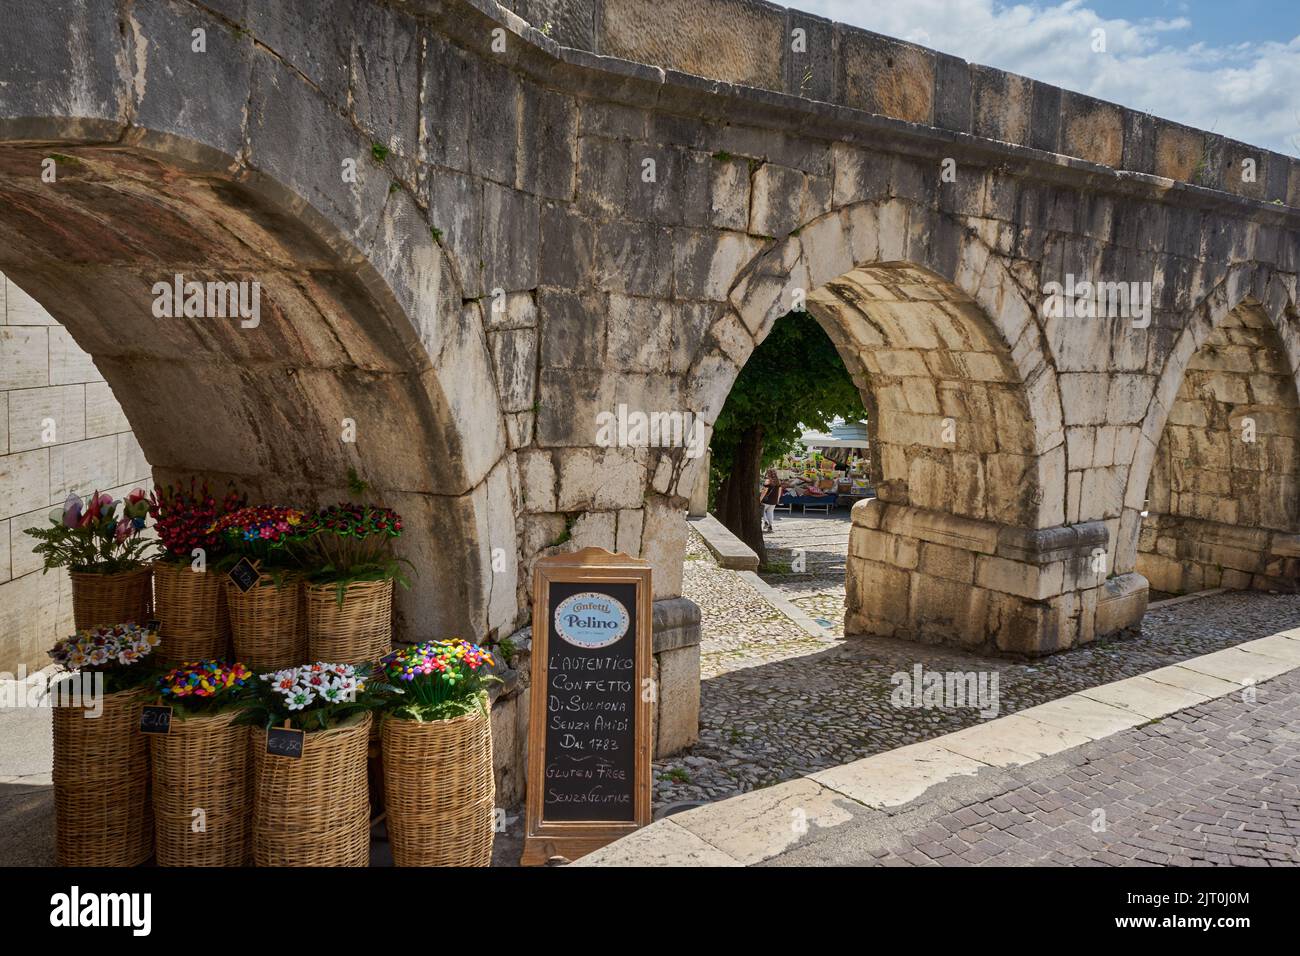 Aquädukt, Acquedotto Medievale, vorne Konfetti, glänzende karamellisierte Mandeln, traditionelle Süßigkeit, Sulmona, Provinz L’Aquila, Abruzzen, Italy Stock Photo